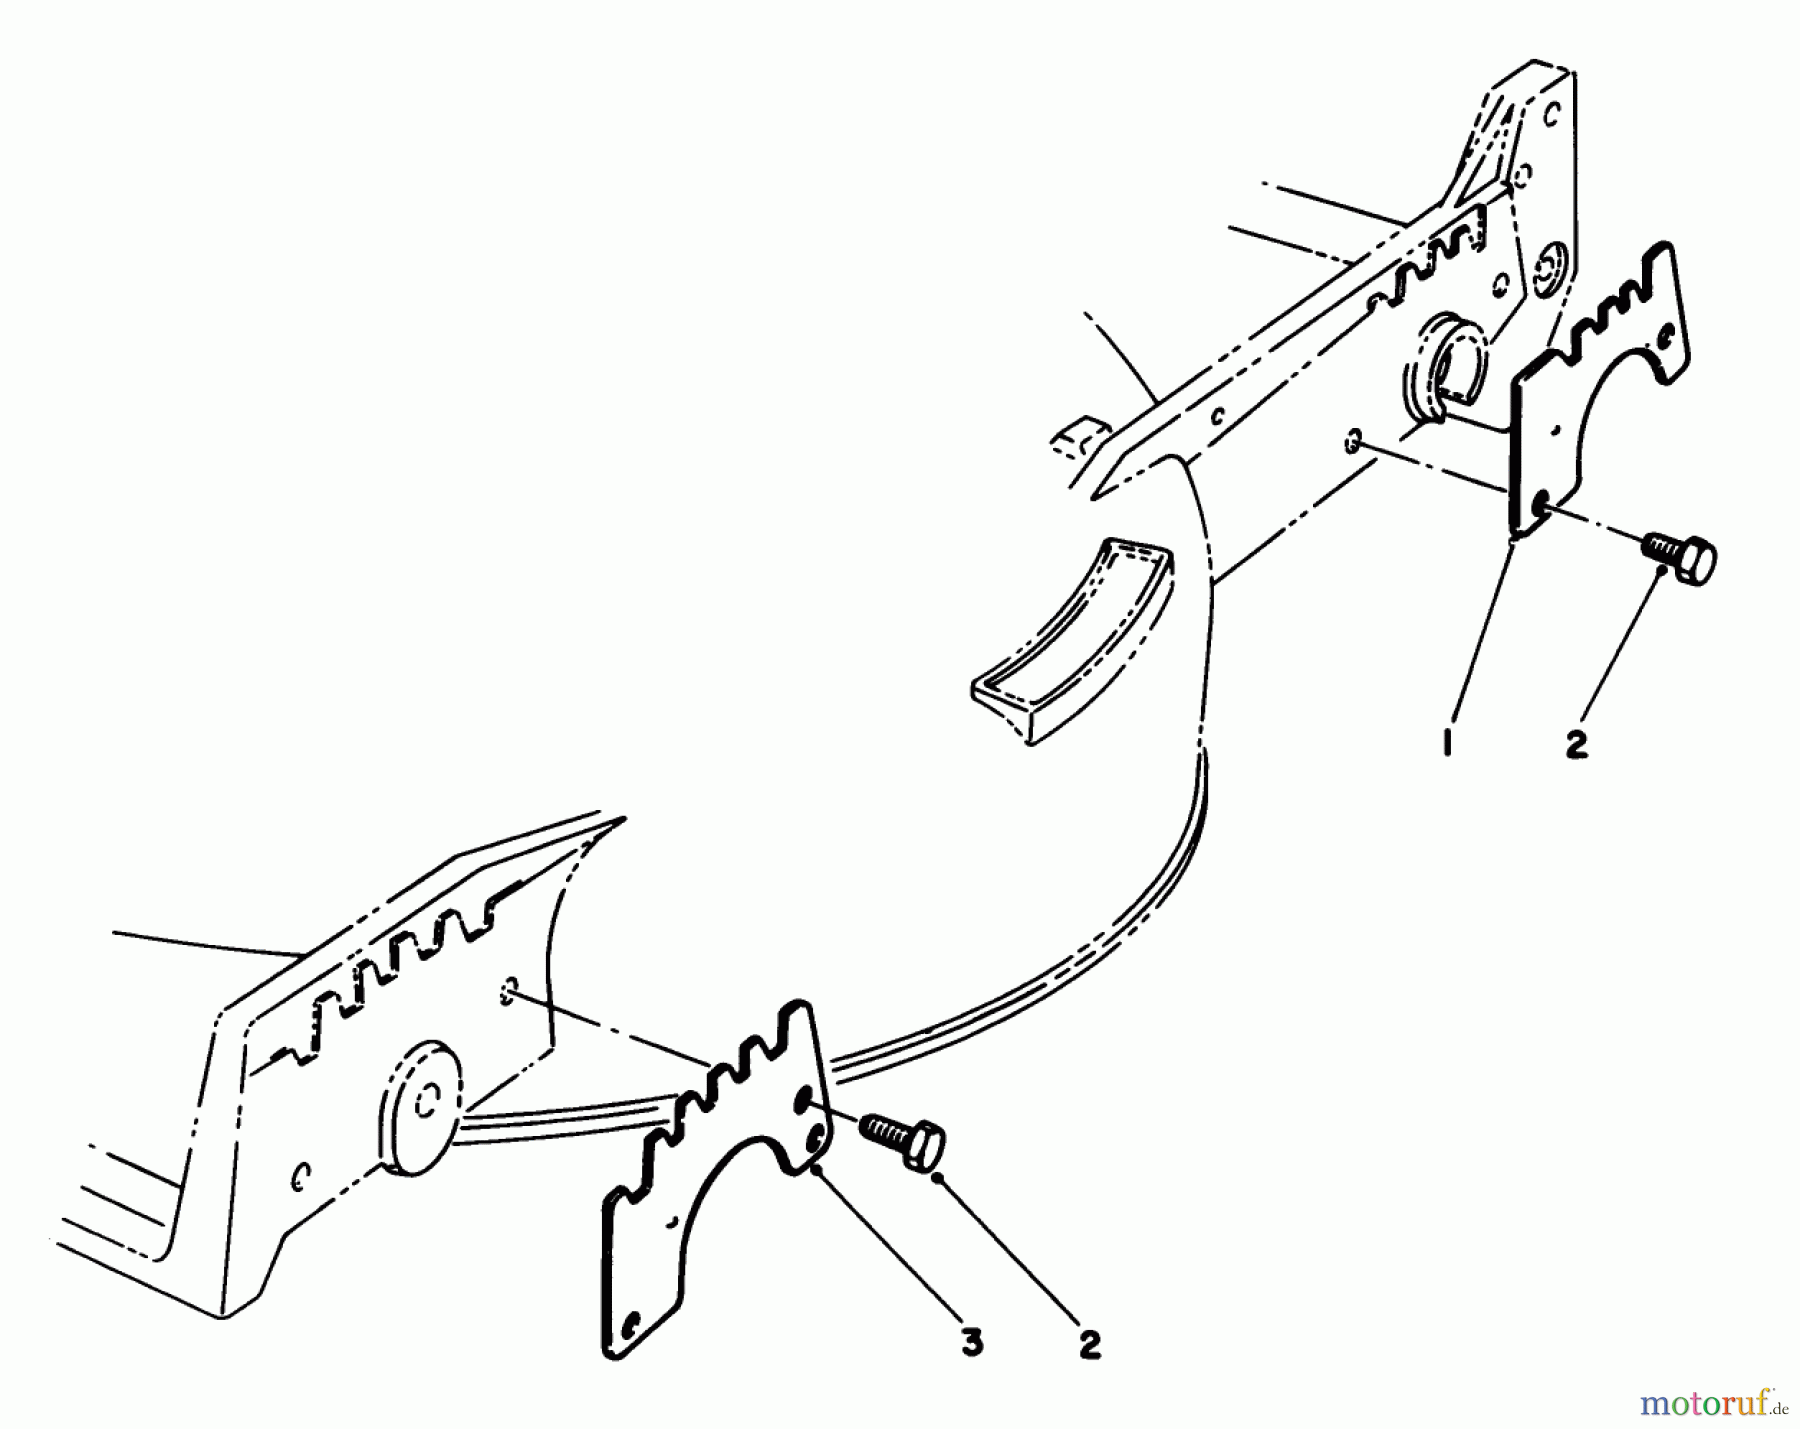  Toro Neu Mowers, Walk-Behind Seite 1 20627C - Toro Lawnmower, 1987 (7000001-7999999) WEAR PLATE KIT NO. 49-4080 (OPTIONAL)